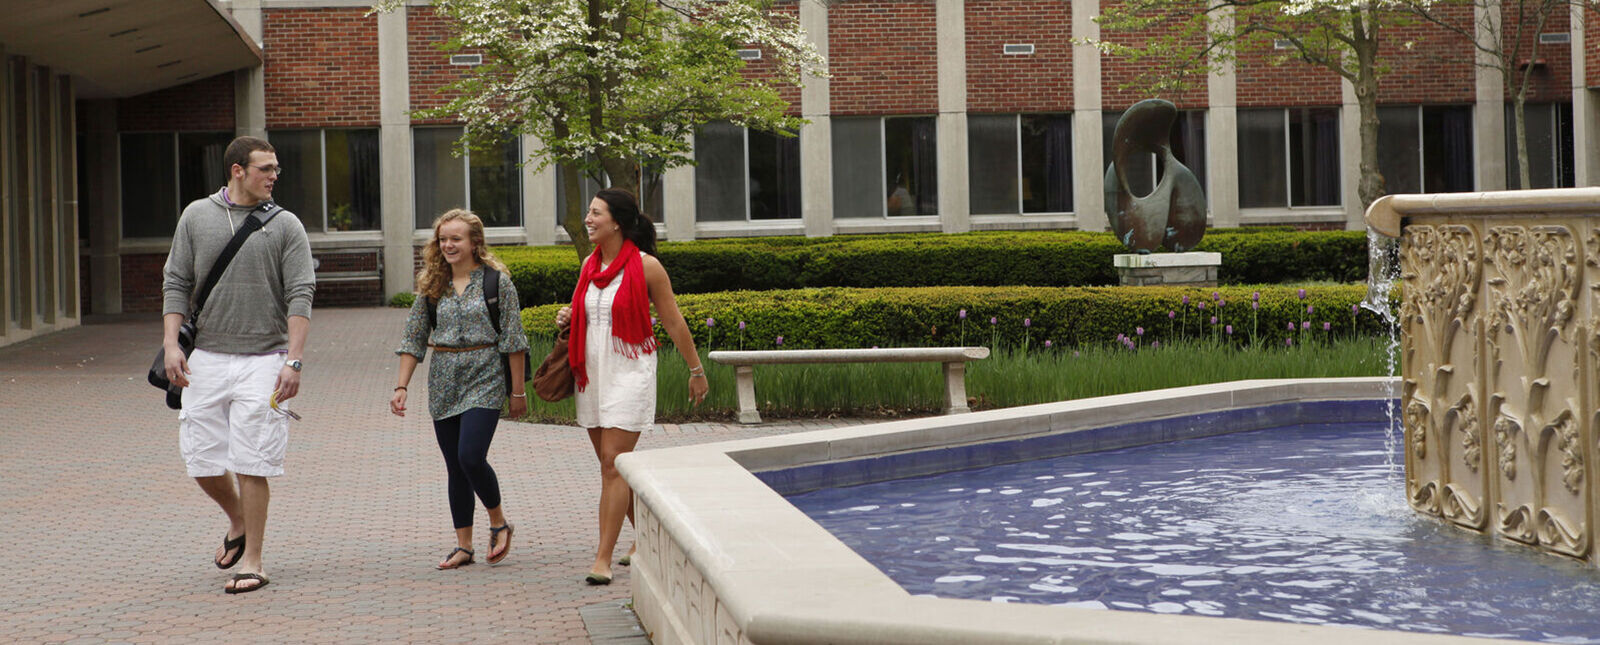 两名女学生和一名男学生在喷泉边走边聊天